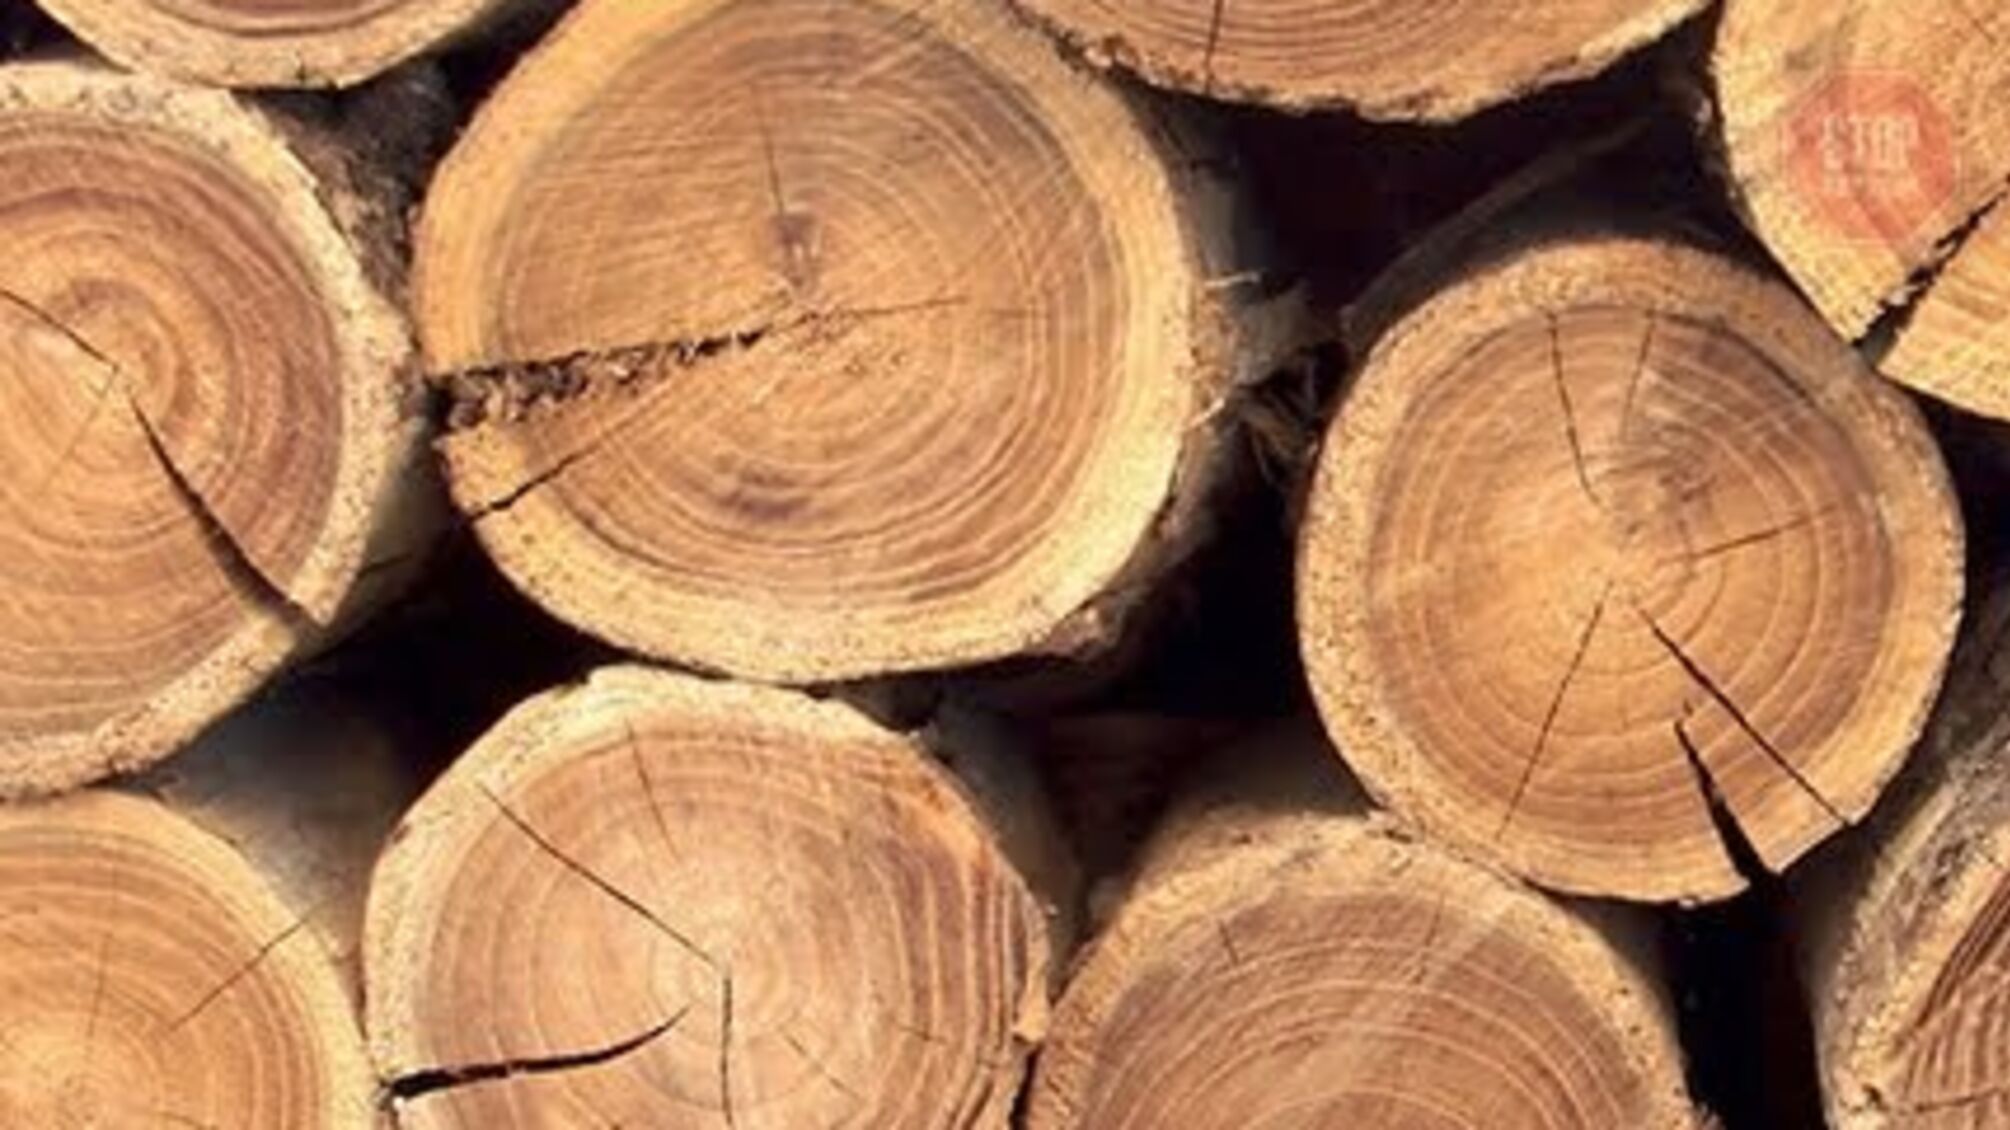 3 тонни незаконно зрубаних дерев: на Дніпропетровщині затримали правопорушника (фото)